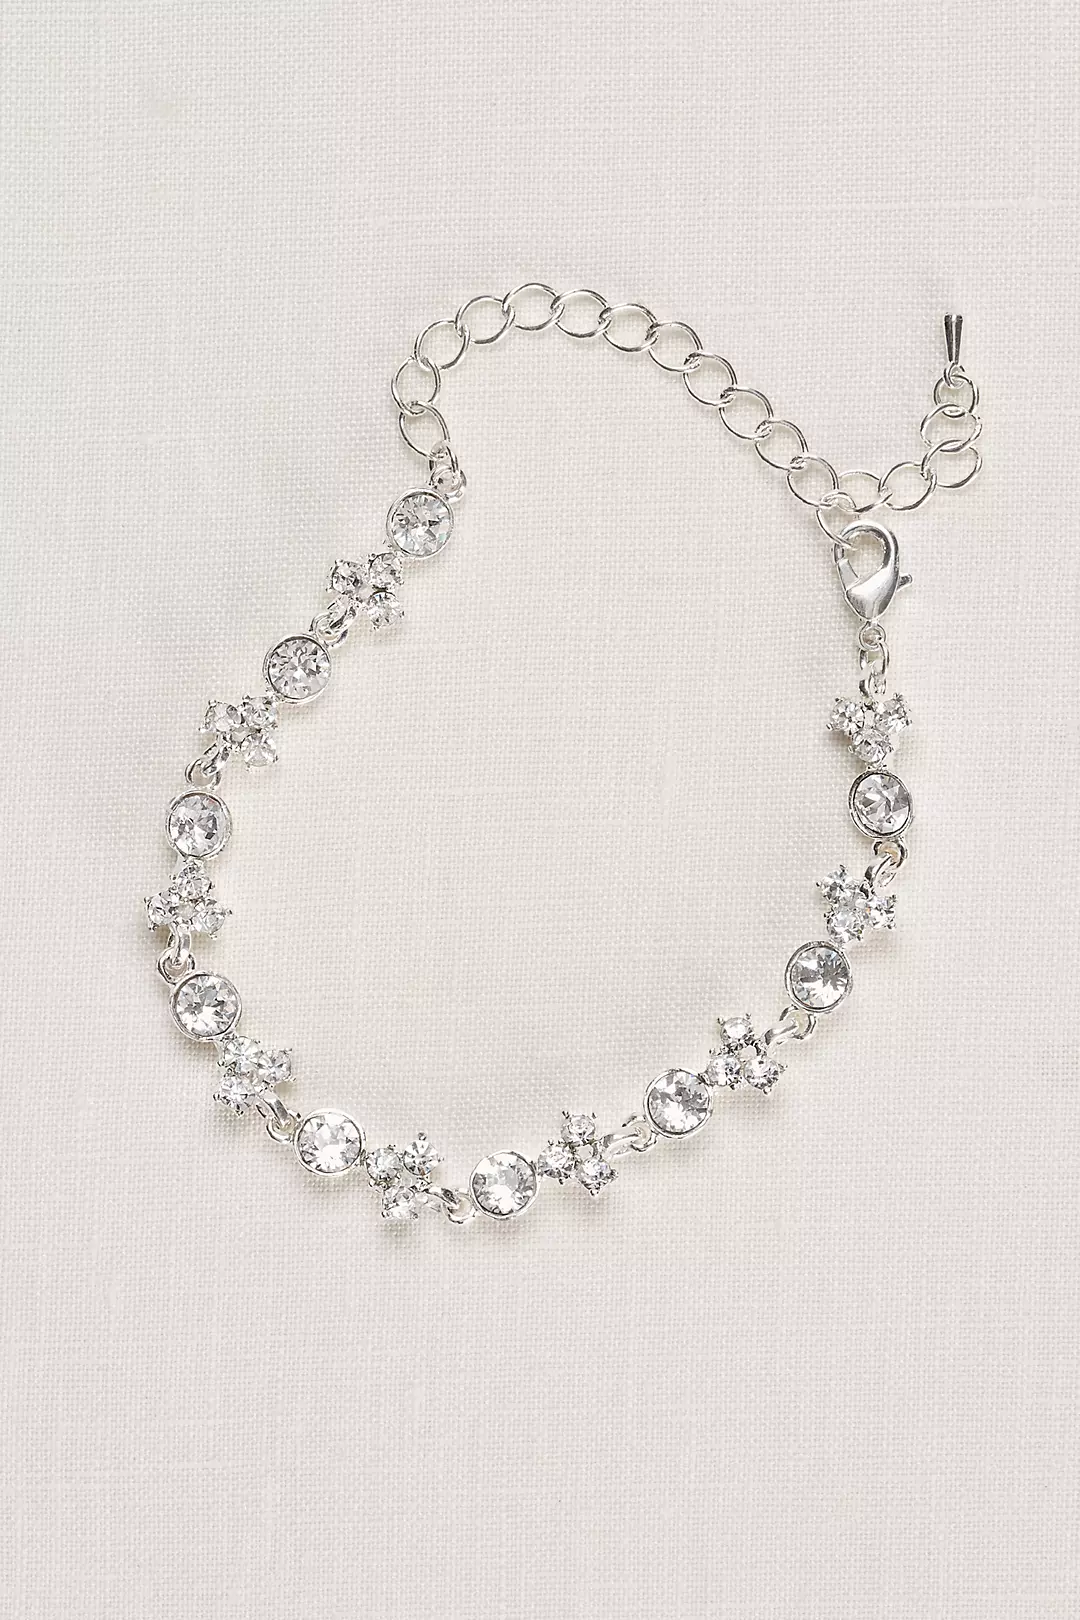 Clustered Crystal Bracelet Image